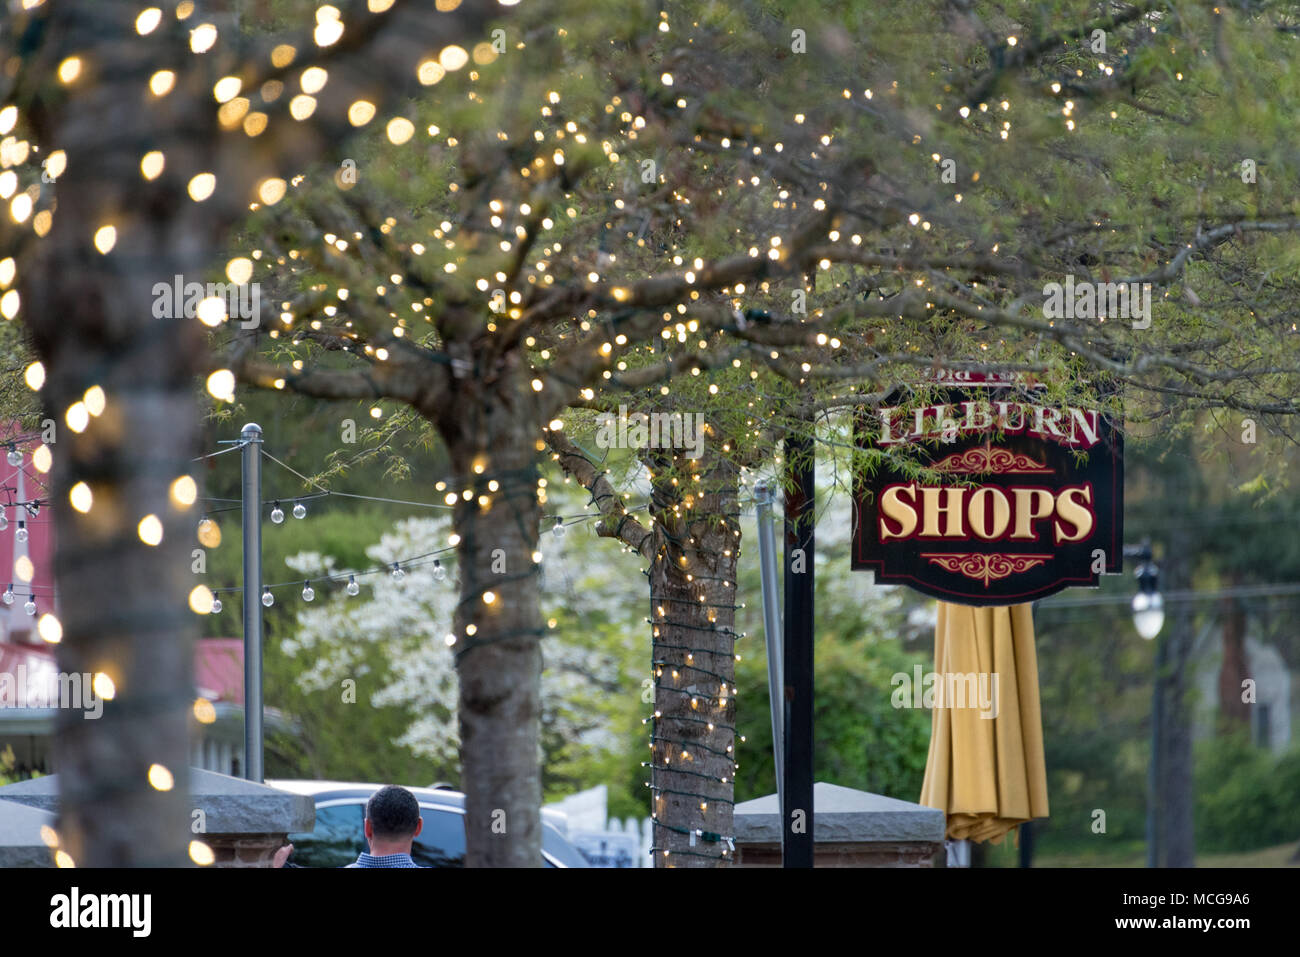 Outdoor Dining und Gehweg unter beleuchtete Bäume entlang der Geschäfte und Baum - Hauptstraße in Lilburn, Georgien gesäumt. Stockfoto